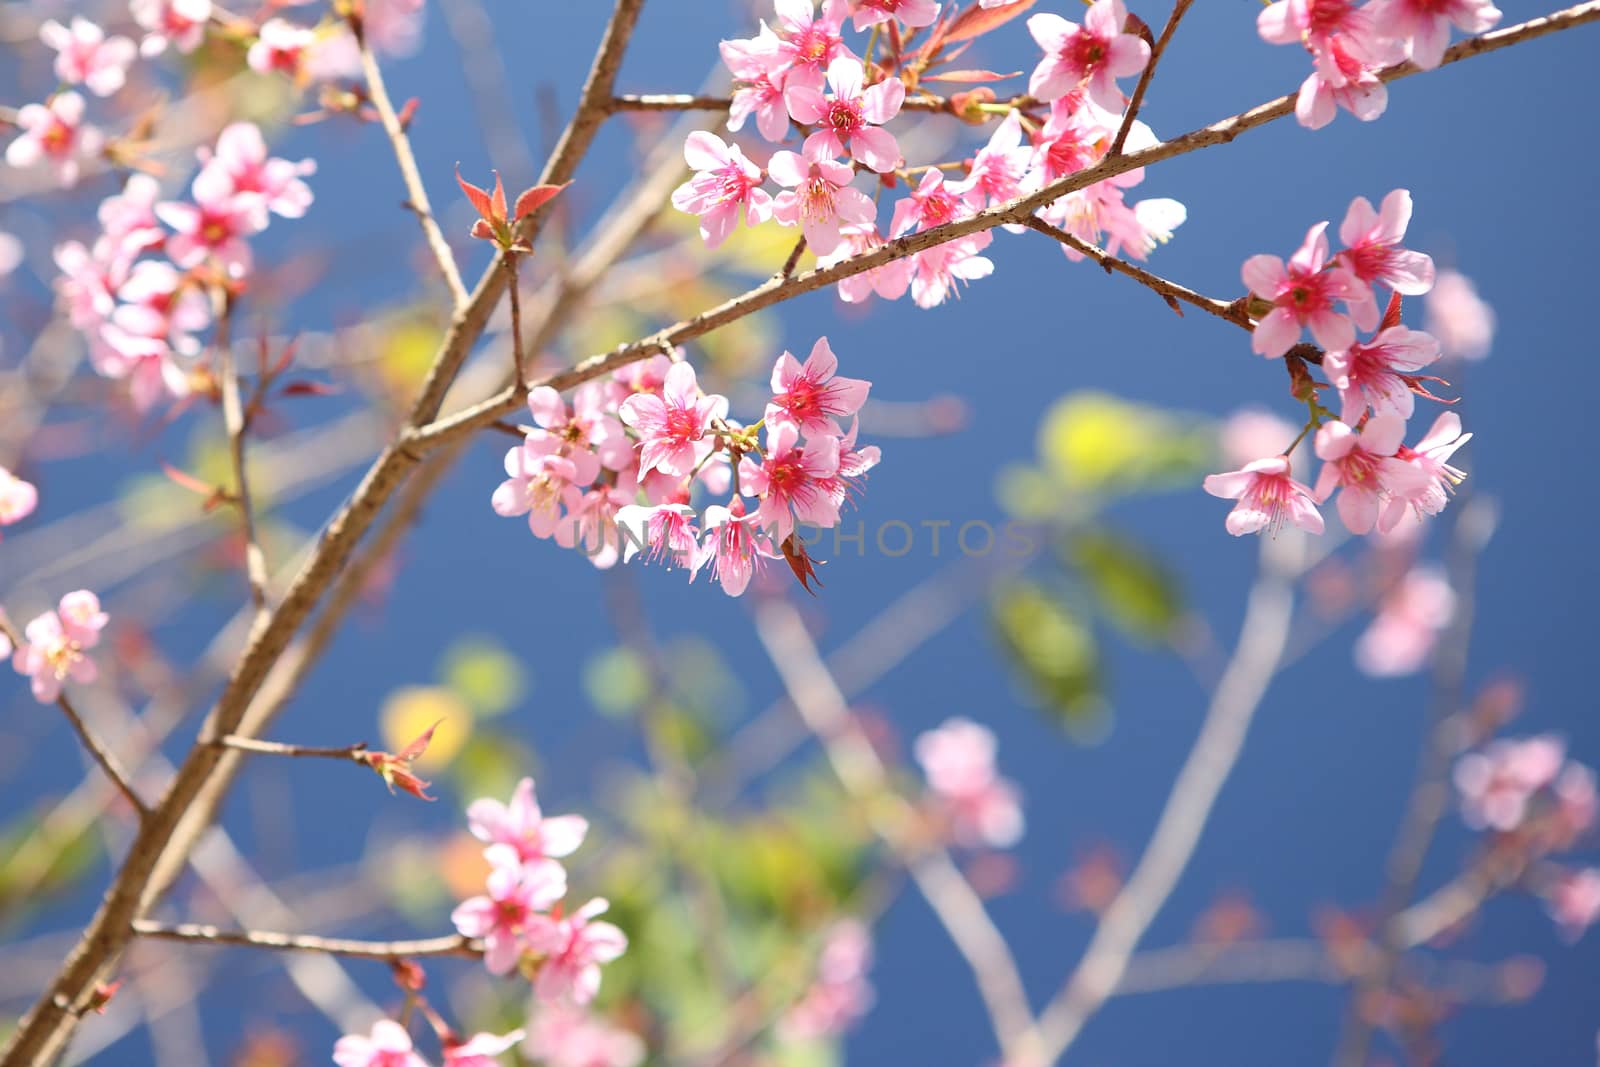 Cherry blossom , pink sakura flower in blue sky